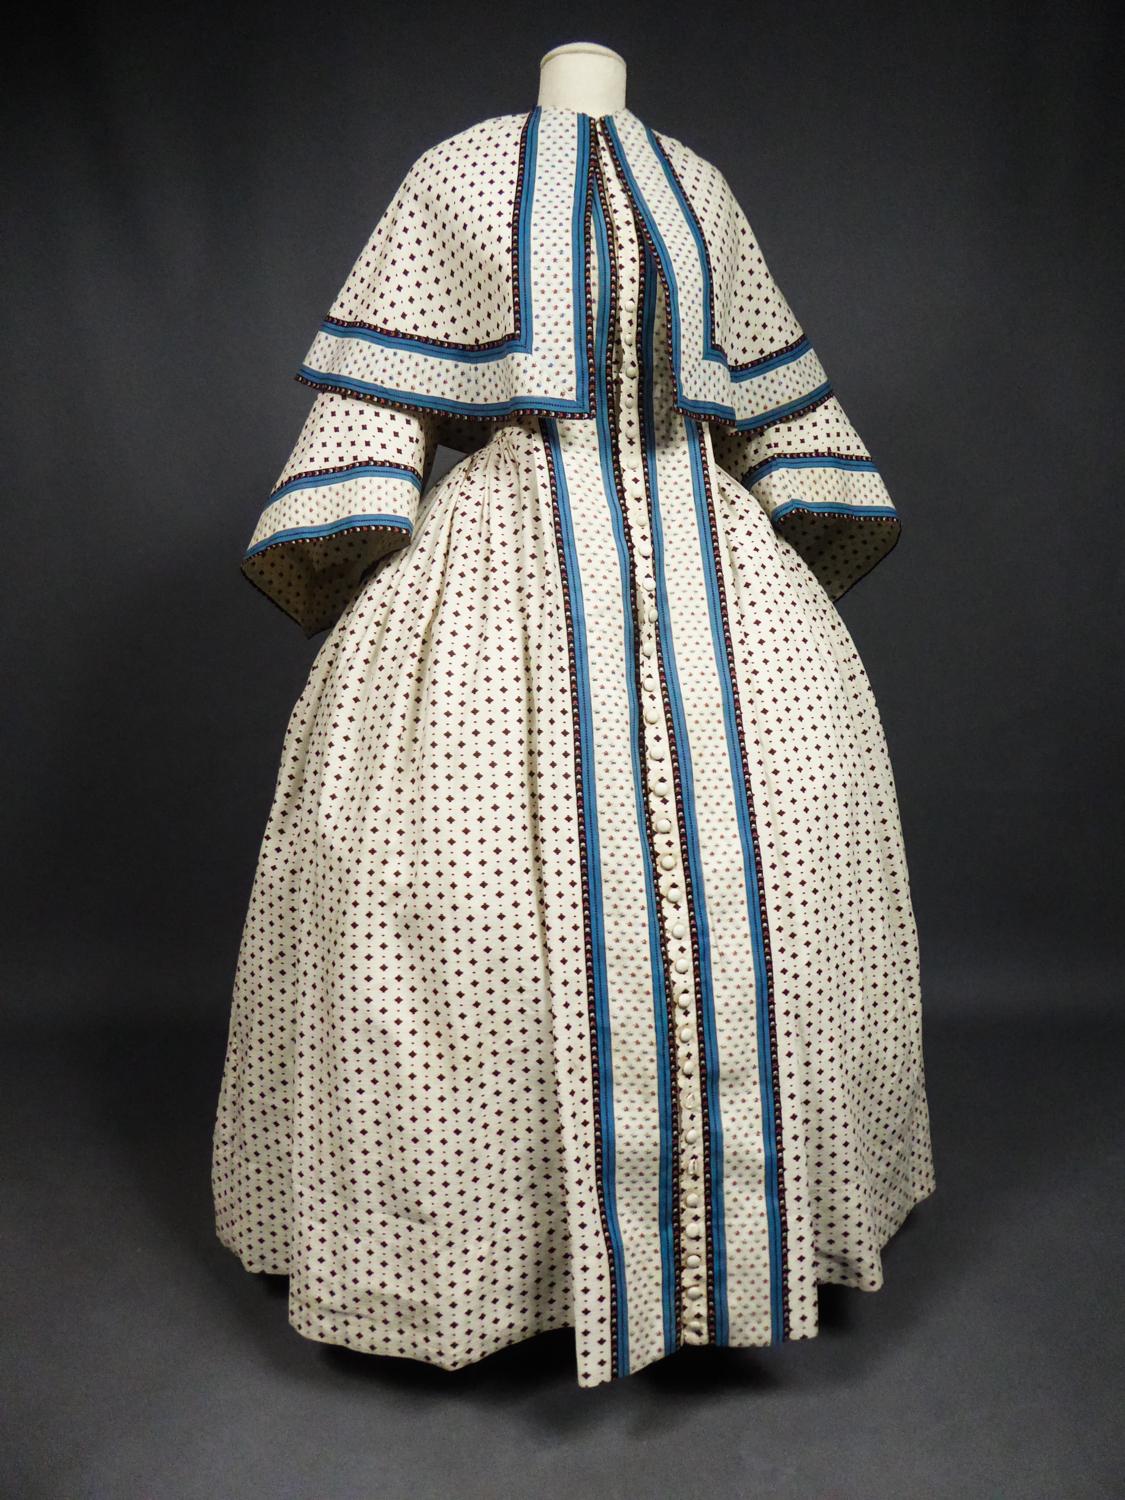 A Printed Cotton Crinoline Day Dress - France Napoleon III Period Circa 1865 11